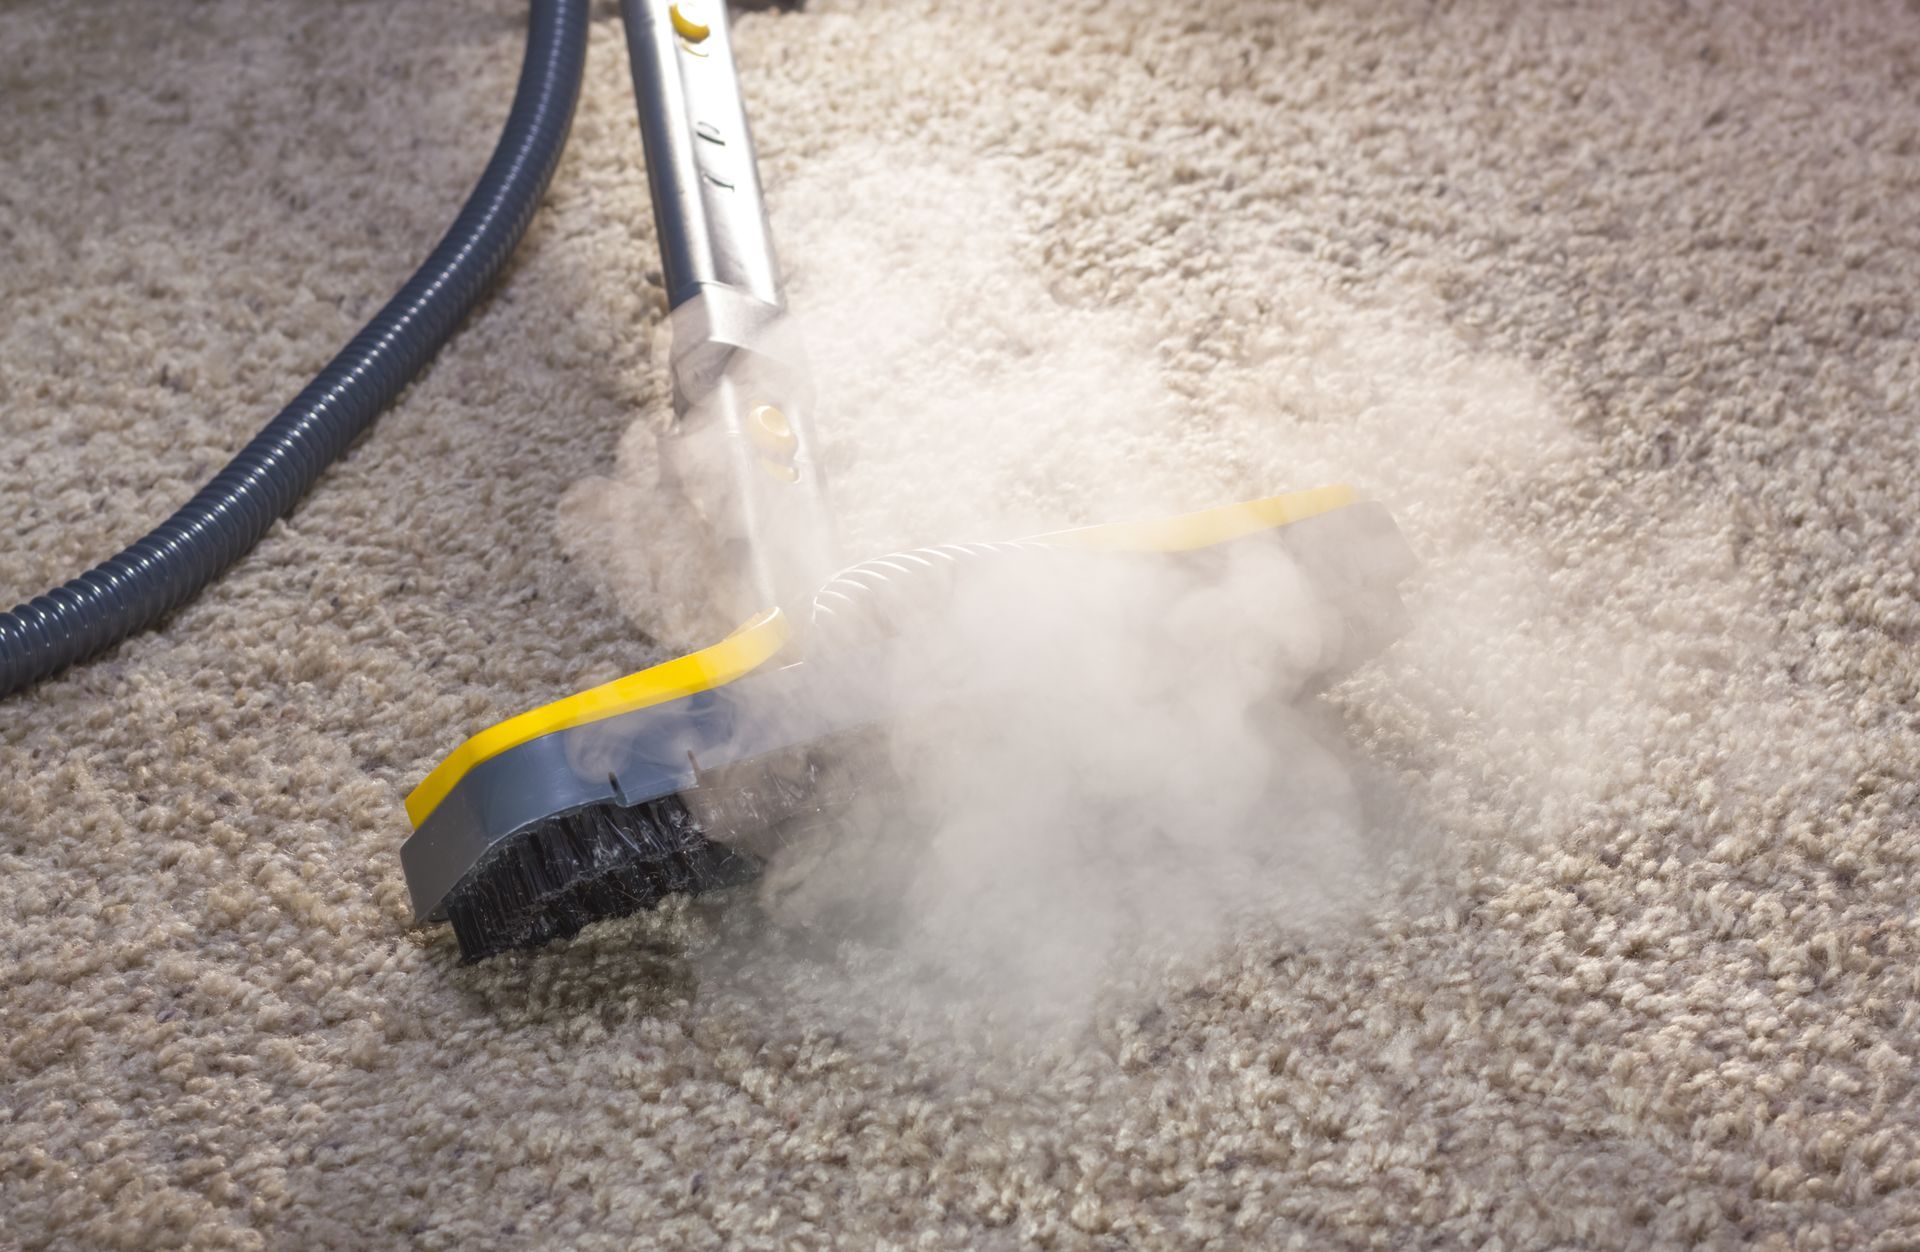 Un aspirateur nettoie un tapis avec de la vapeur qui en sort.